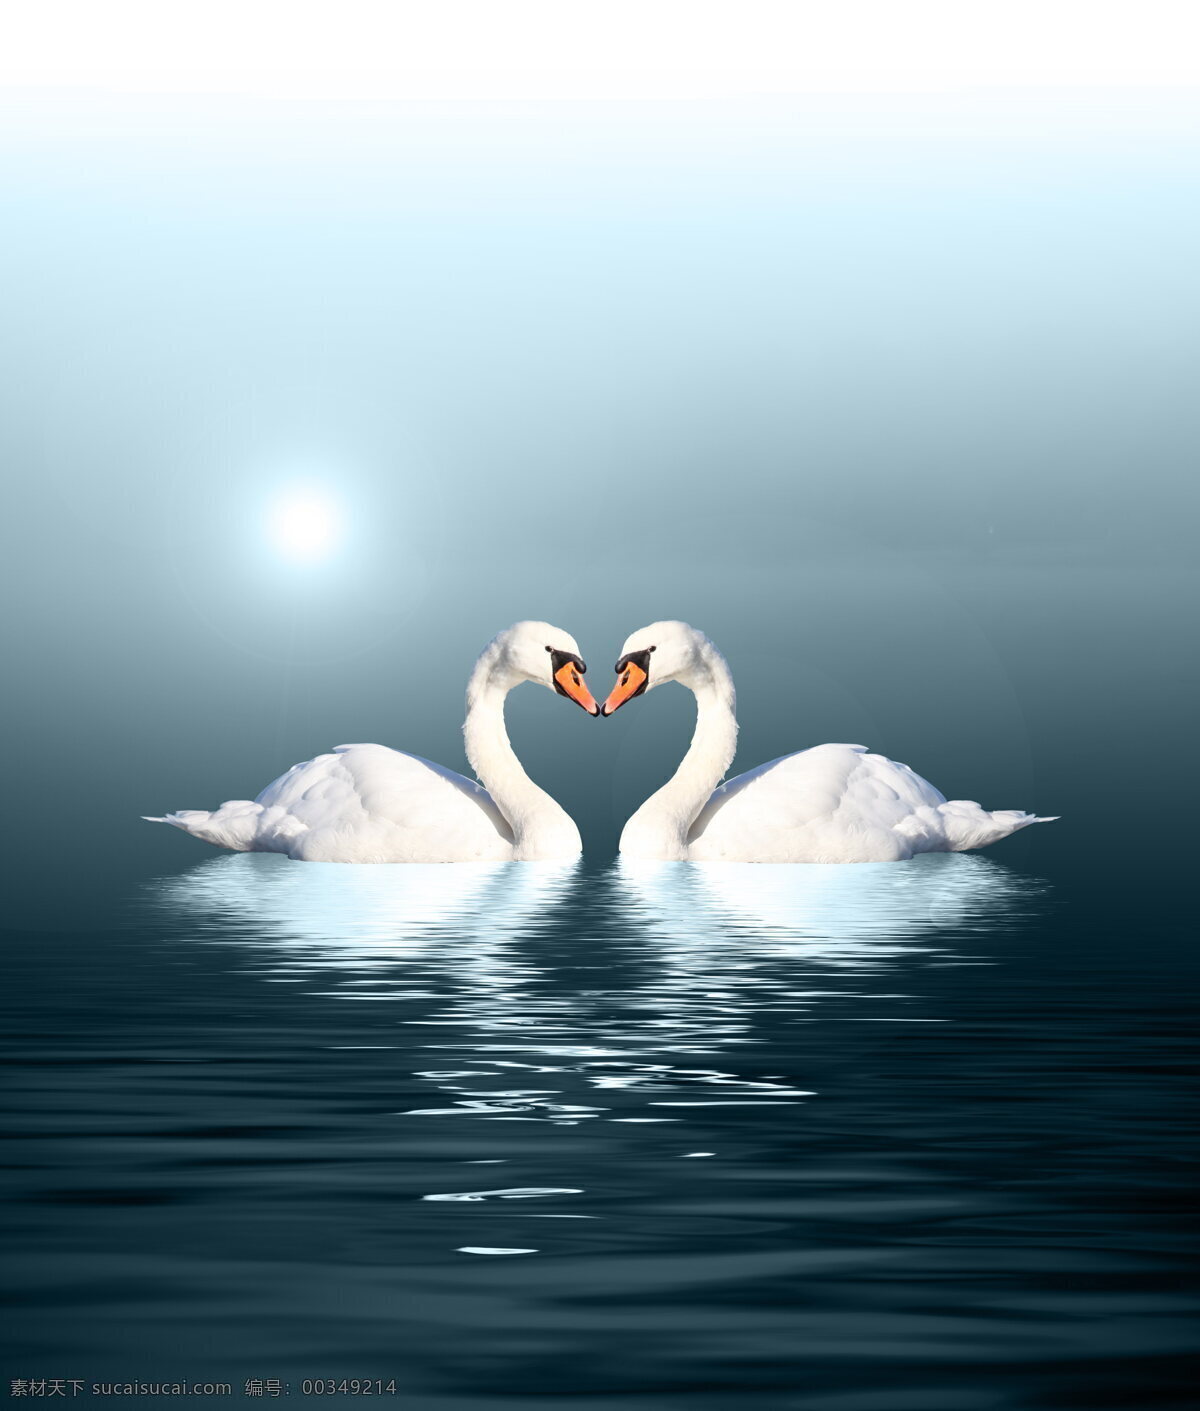 唯美天鹅 爱情 唯美 天鹅 湖泊 白天鹅 家禽 禽类 动物 蓝色湖泊 白色 羽毛 湖水 水波 波纹 唯美爱情 海洋生物 生物世界 家禽家畜